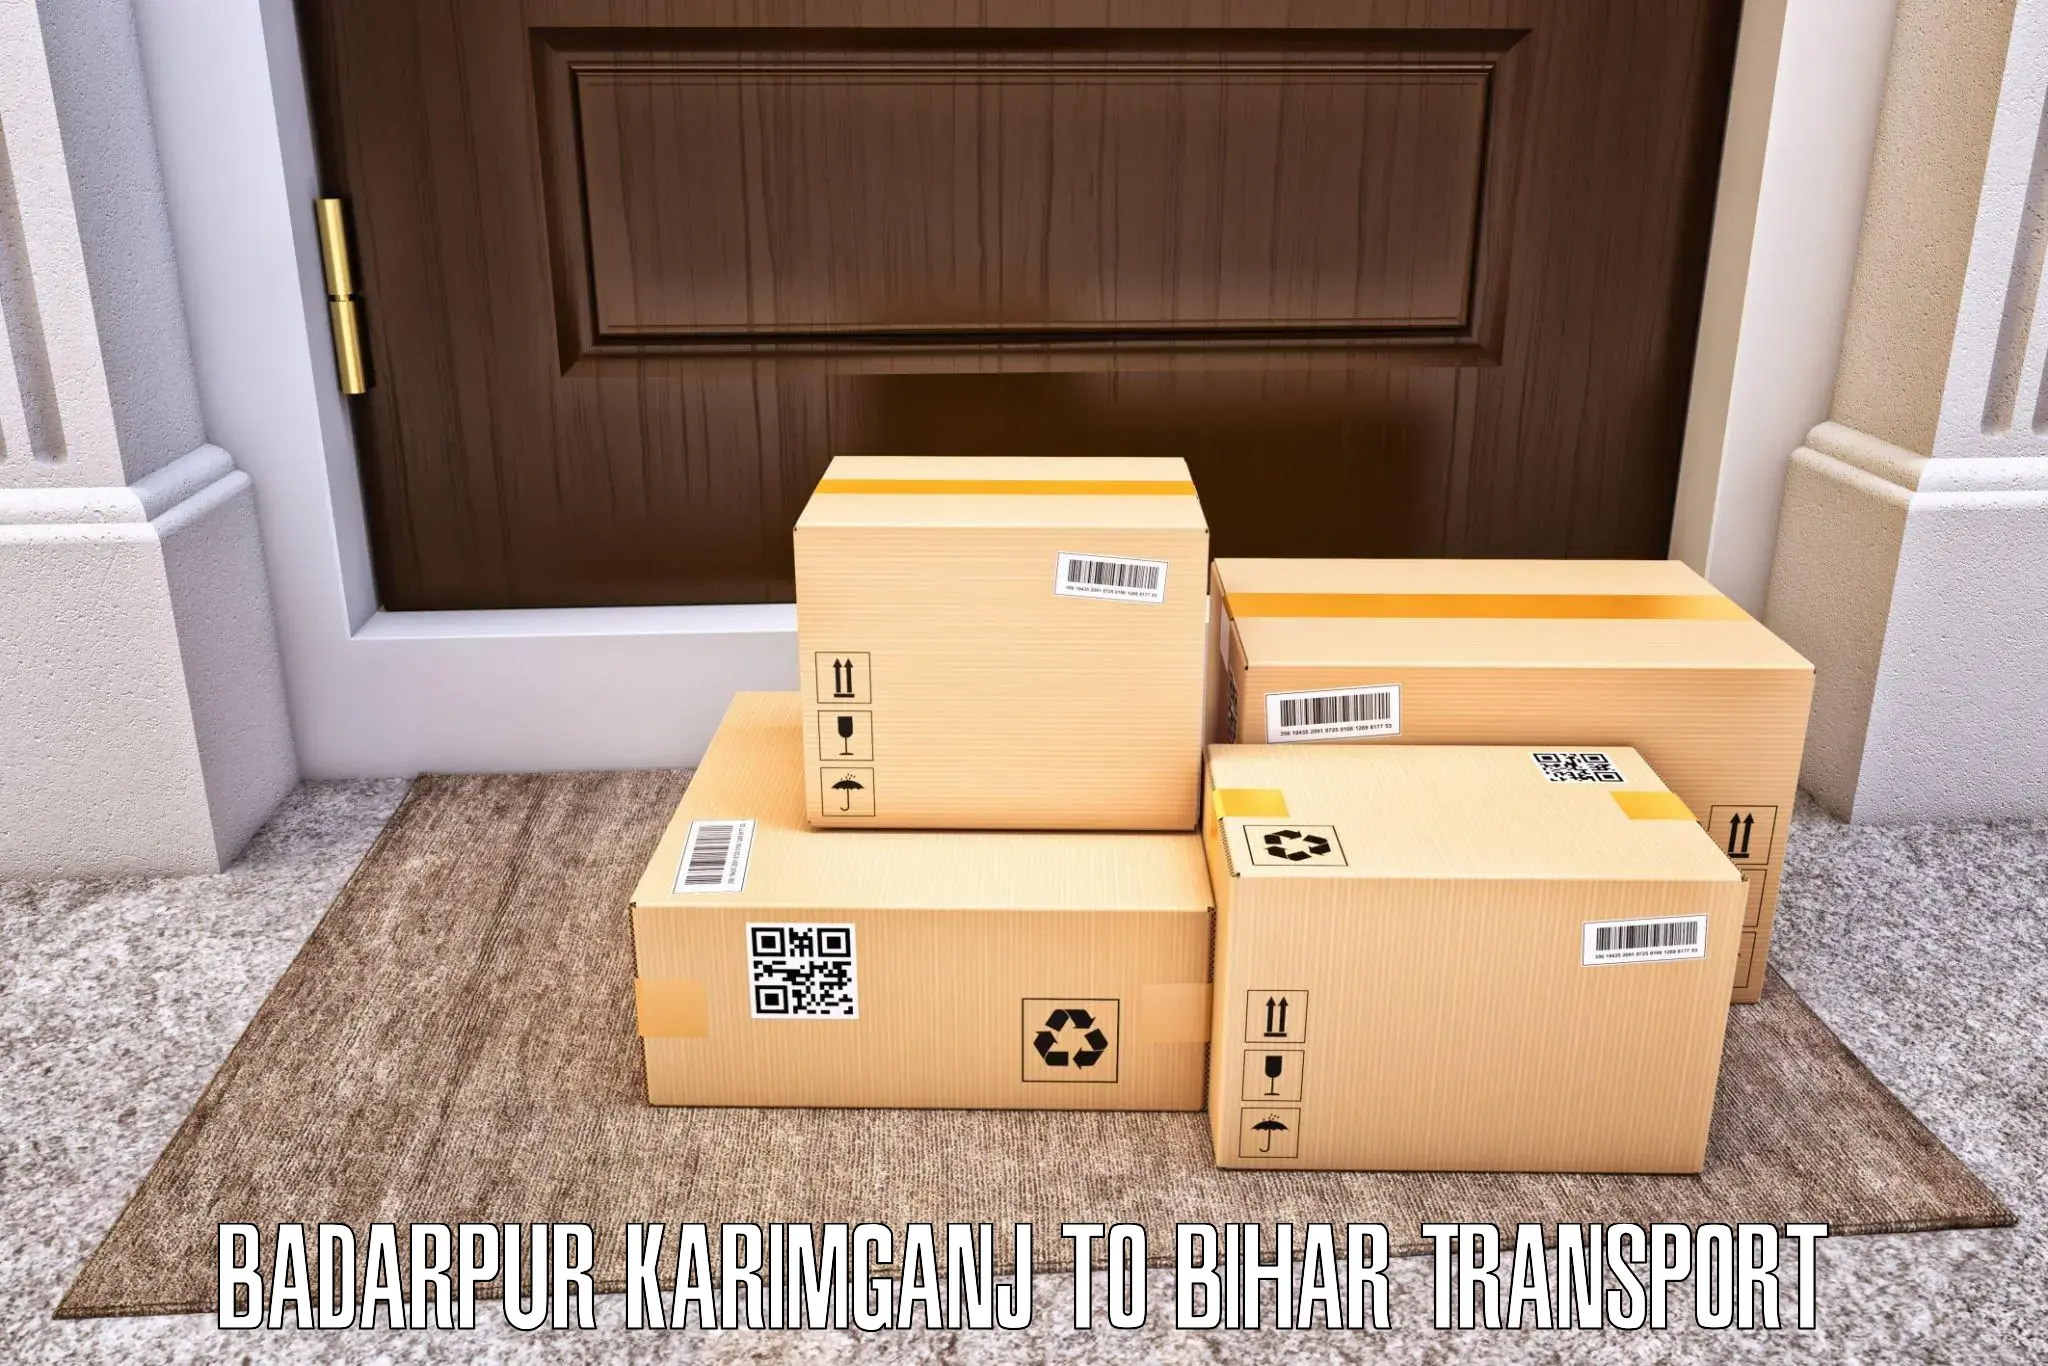 Online transport booking Badarpur Karimganj to Hasanpura